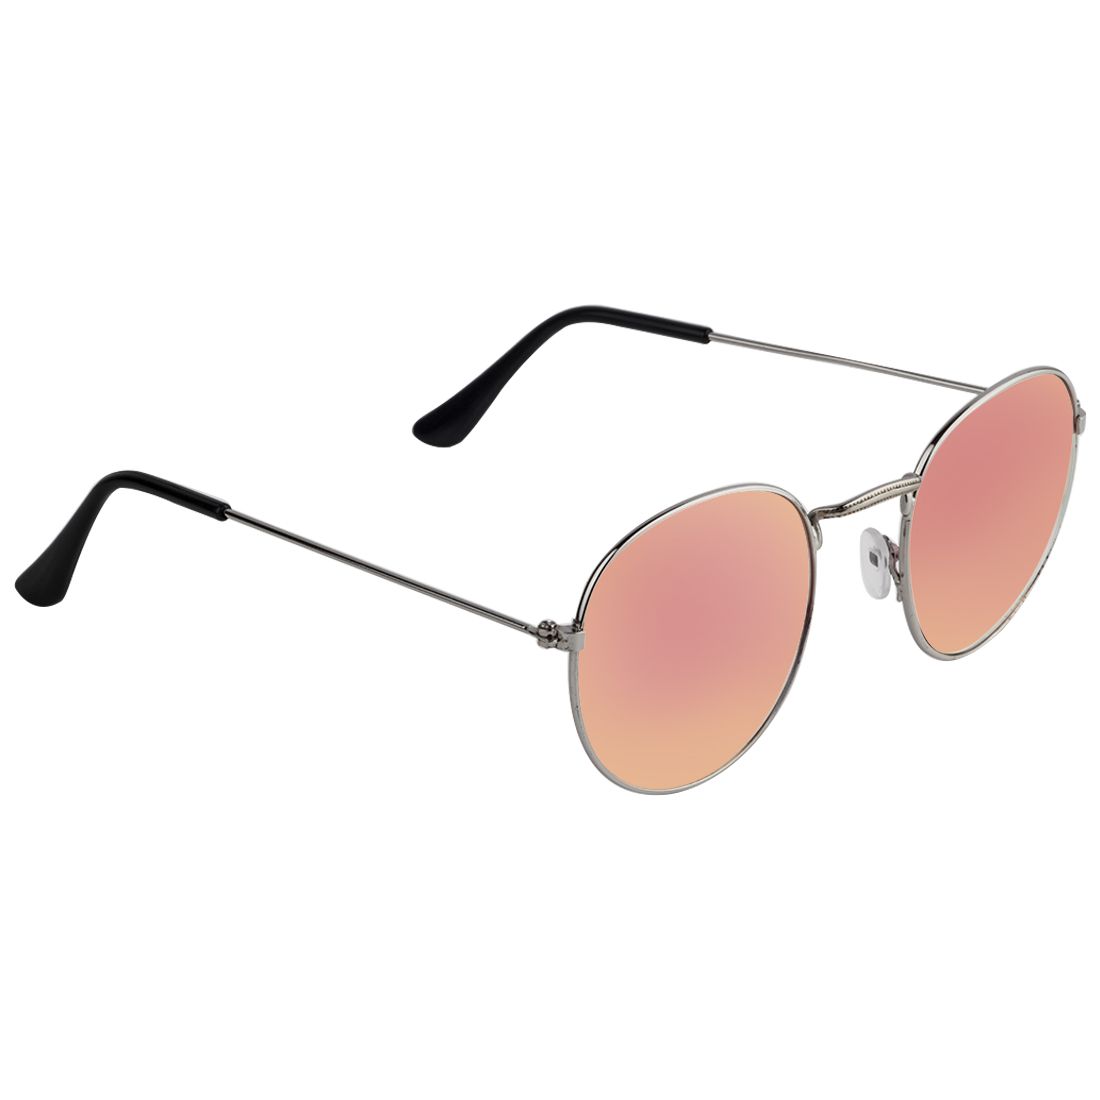 Zyaden - Pink Round Sunglasses ( SUN232 ) - Buy Zyaden - Pink Round ...